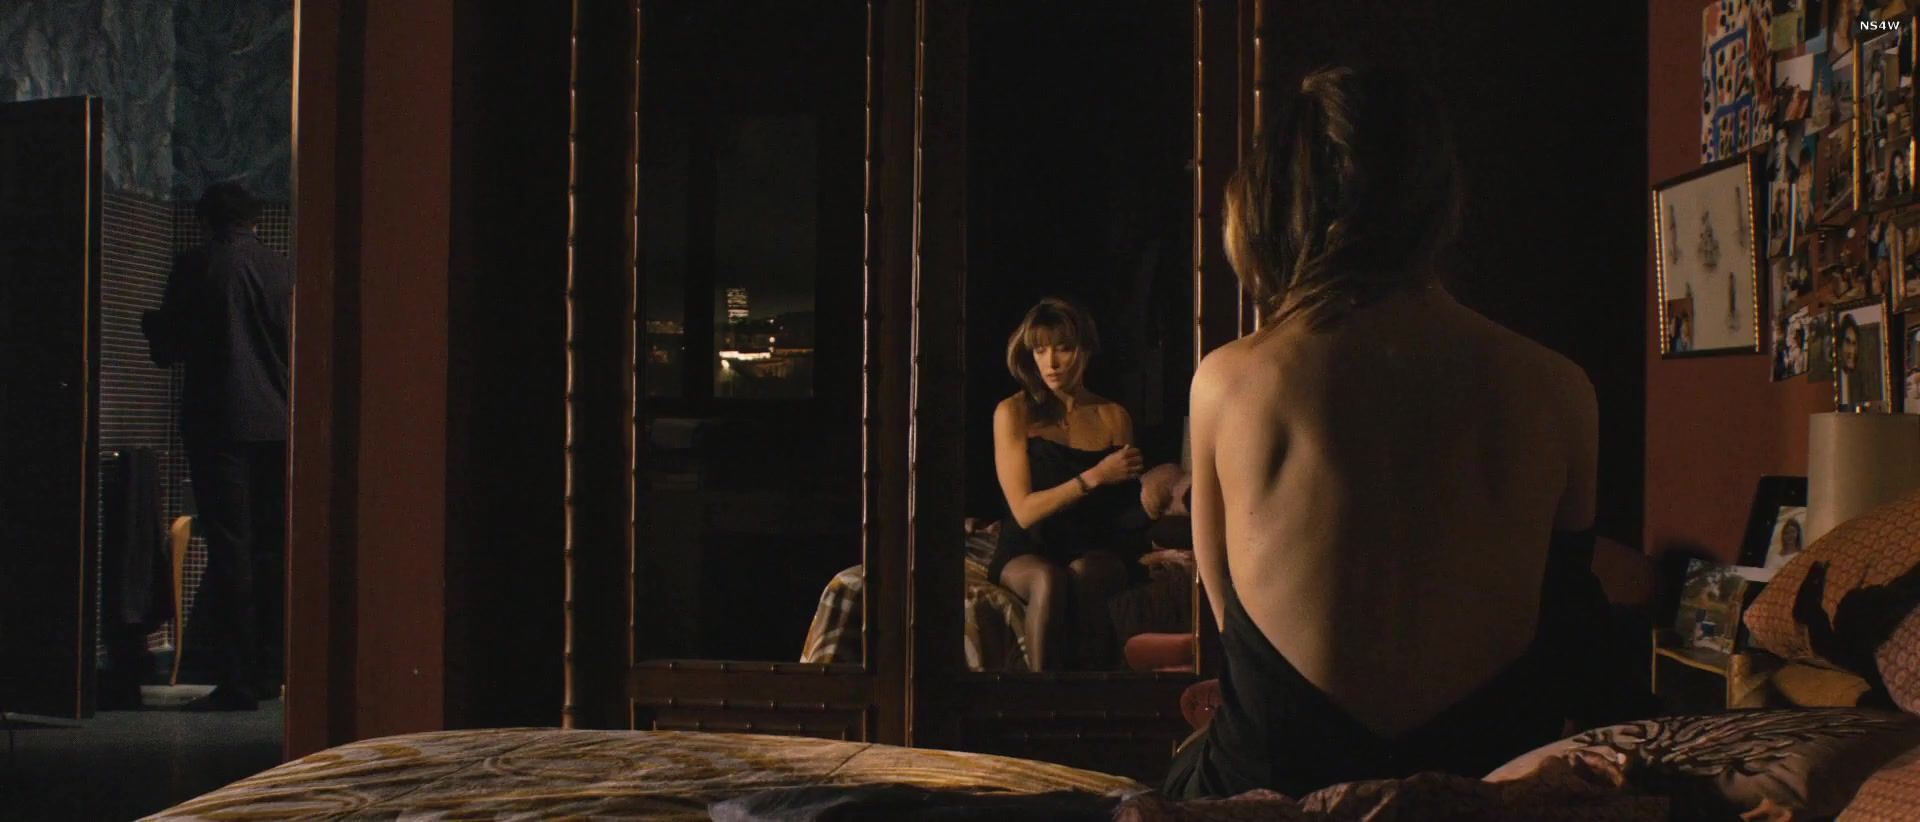 Ass Topless Celebs Sophie Marceau, Monica Bellucci - Ne te retourne pas (2009) Whore